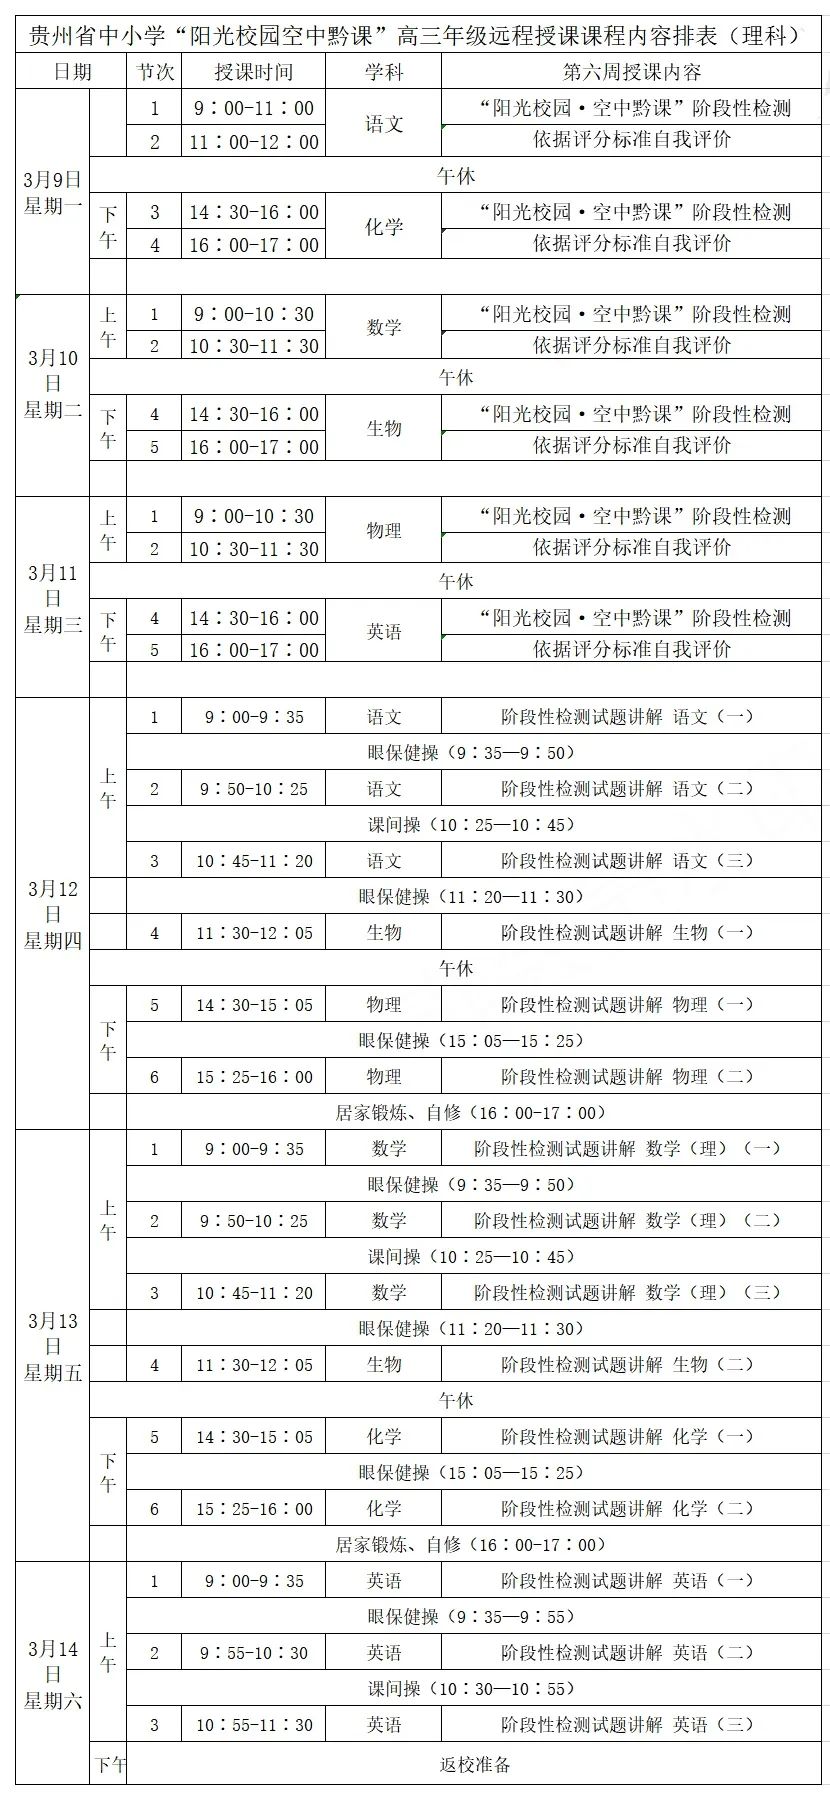 贵州中小学生空中黔课3月第2周课表出炉